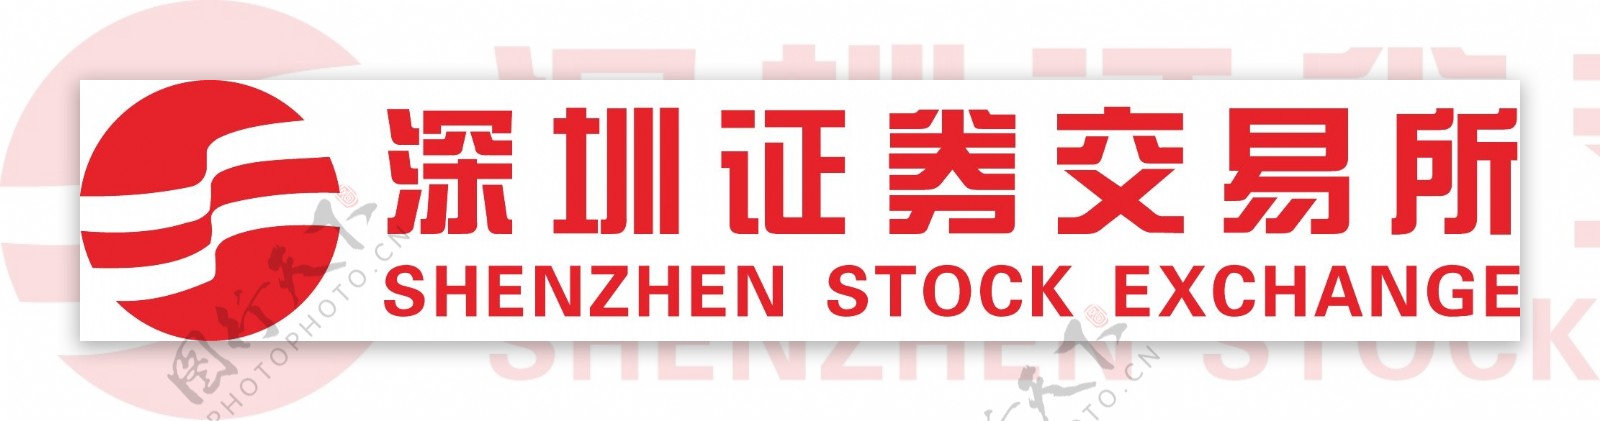 深圳证券交易所标志图片